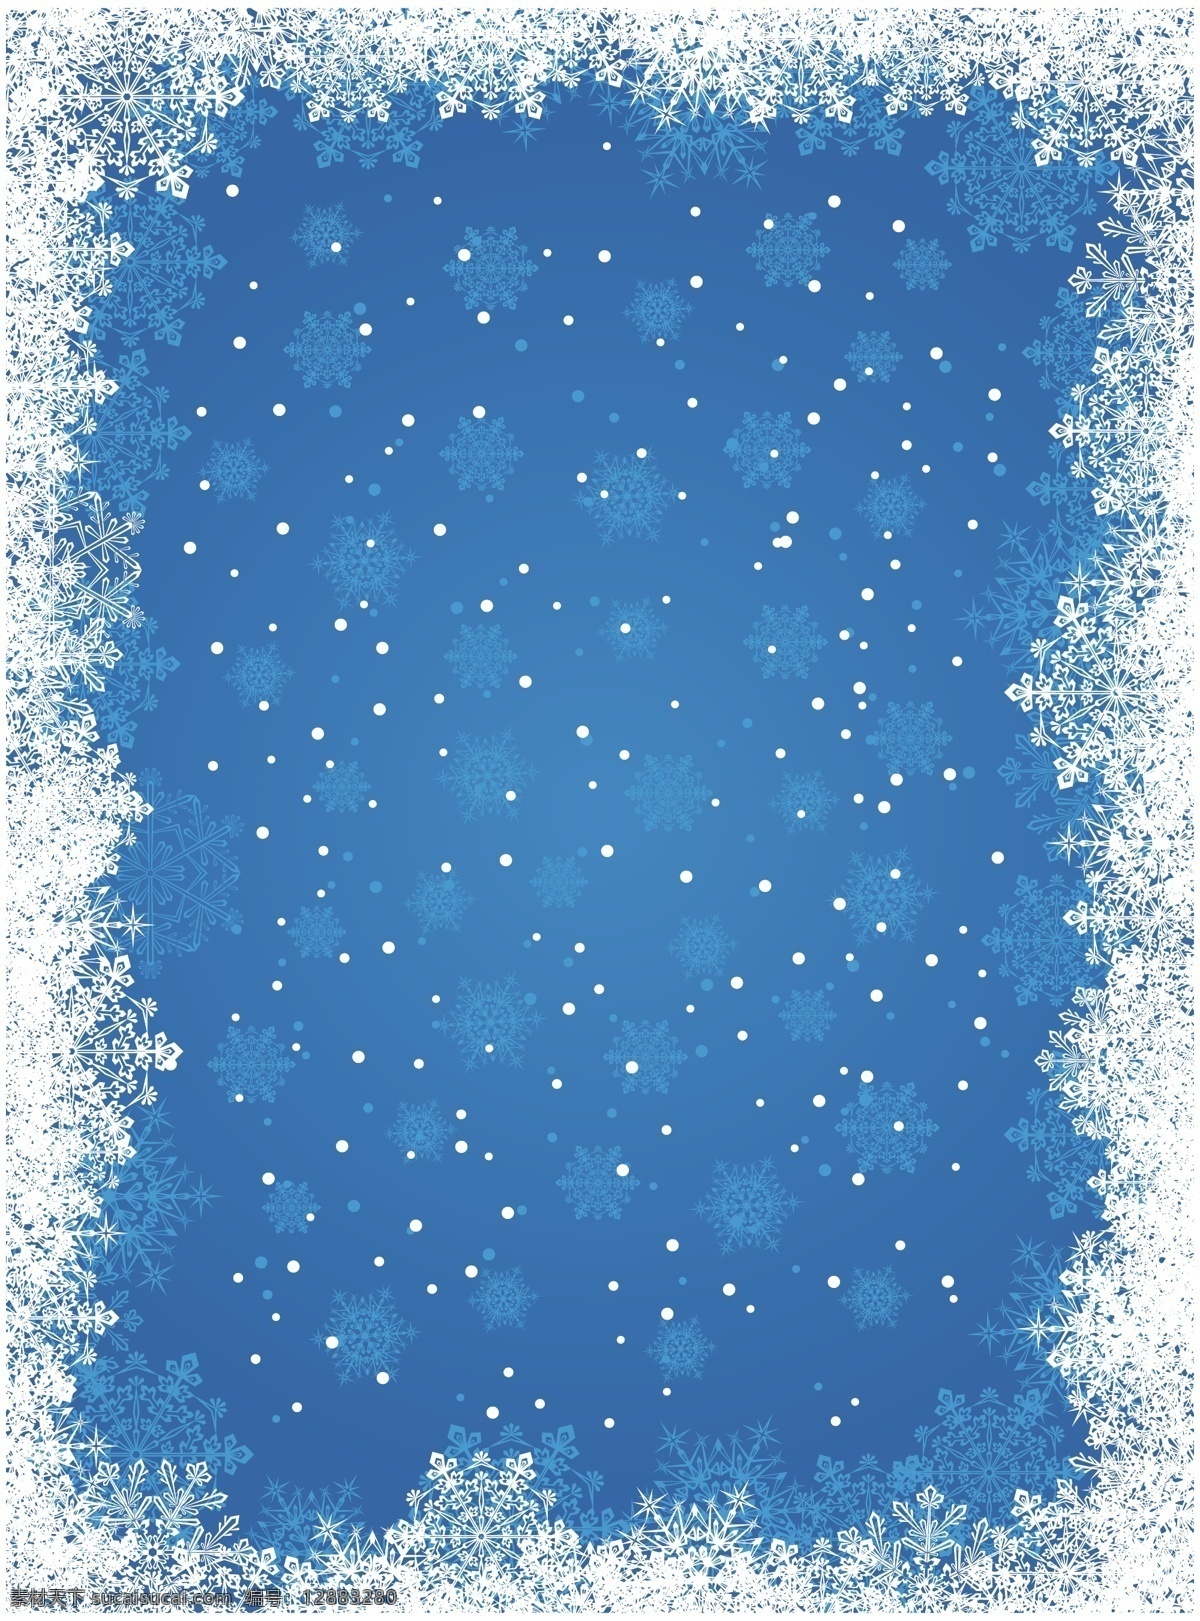 蓝色 雪花 背景 矢量 璀璨 圣诞节 矢量素材 星光 绚丽 矢量图 其他矢量图